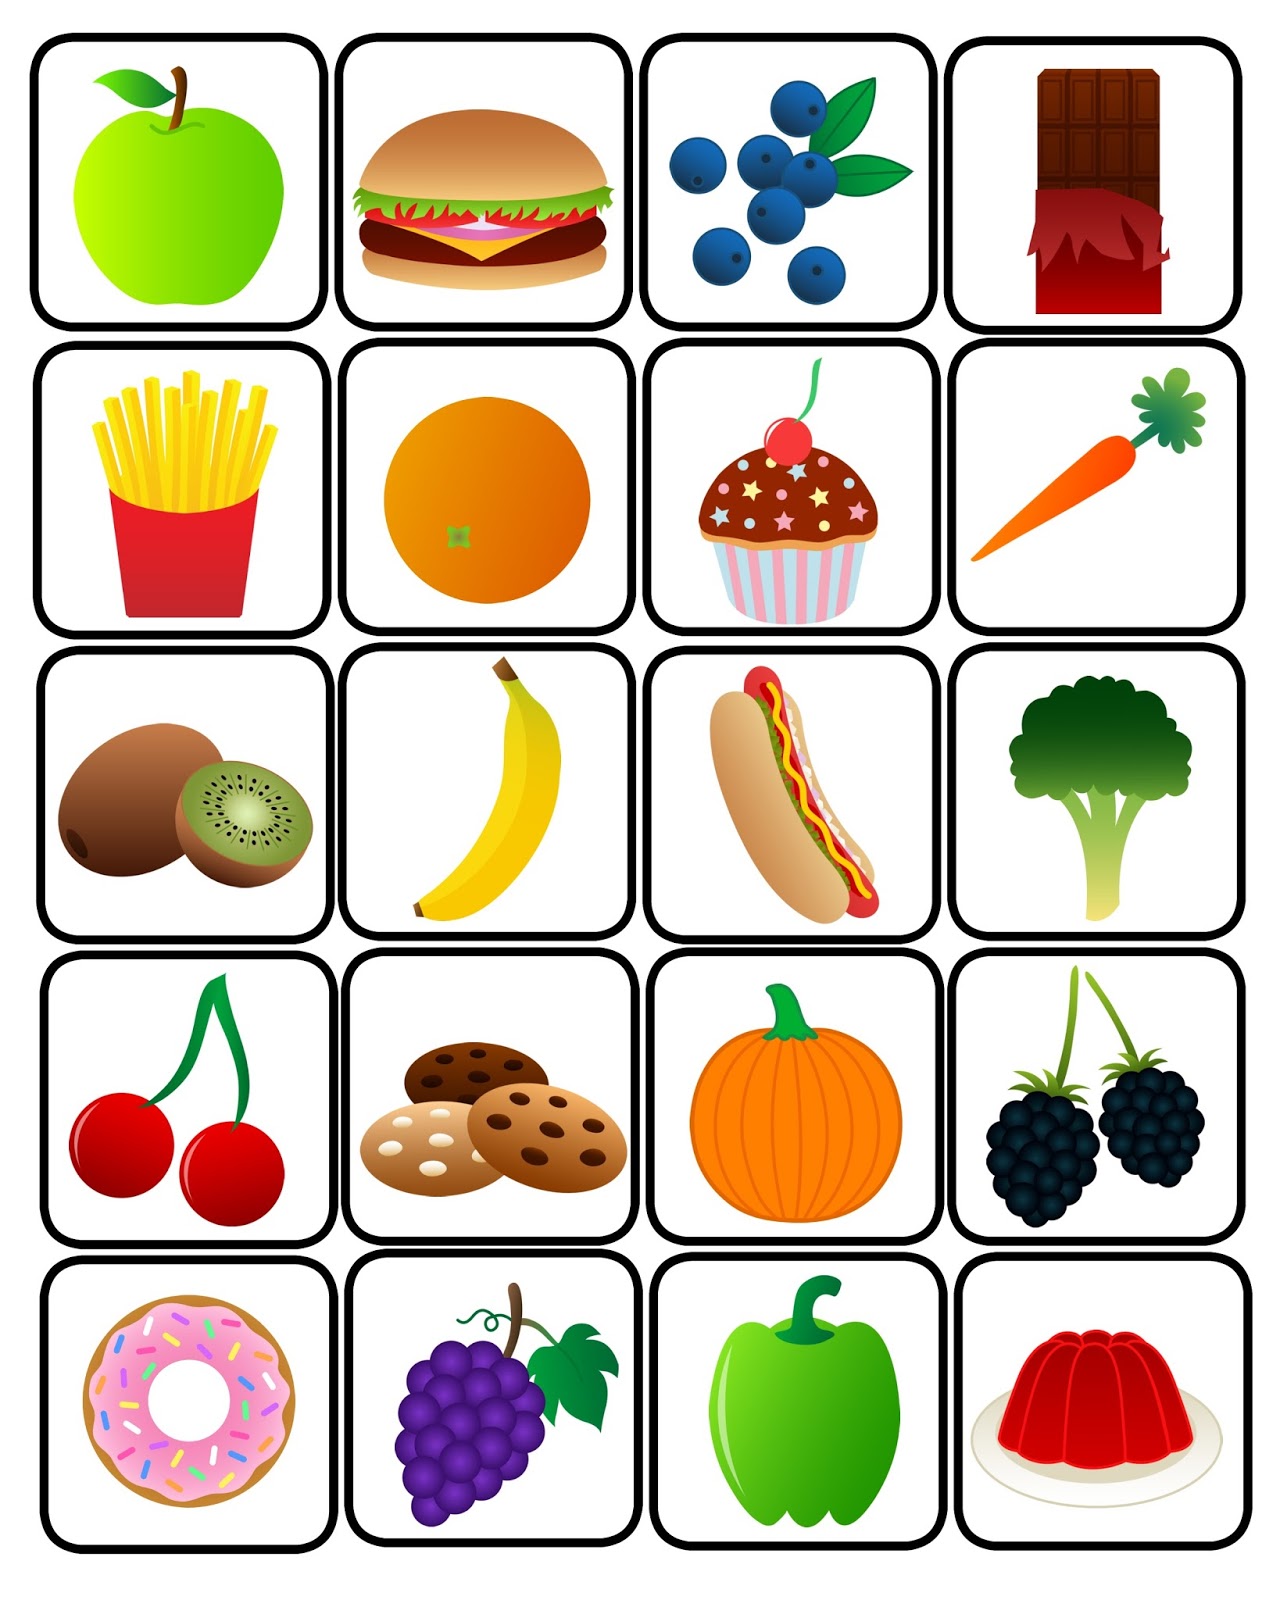 funglish-food-bingo